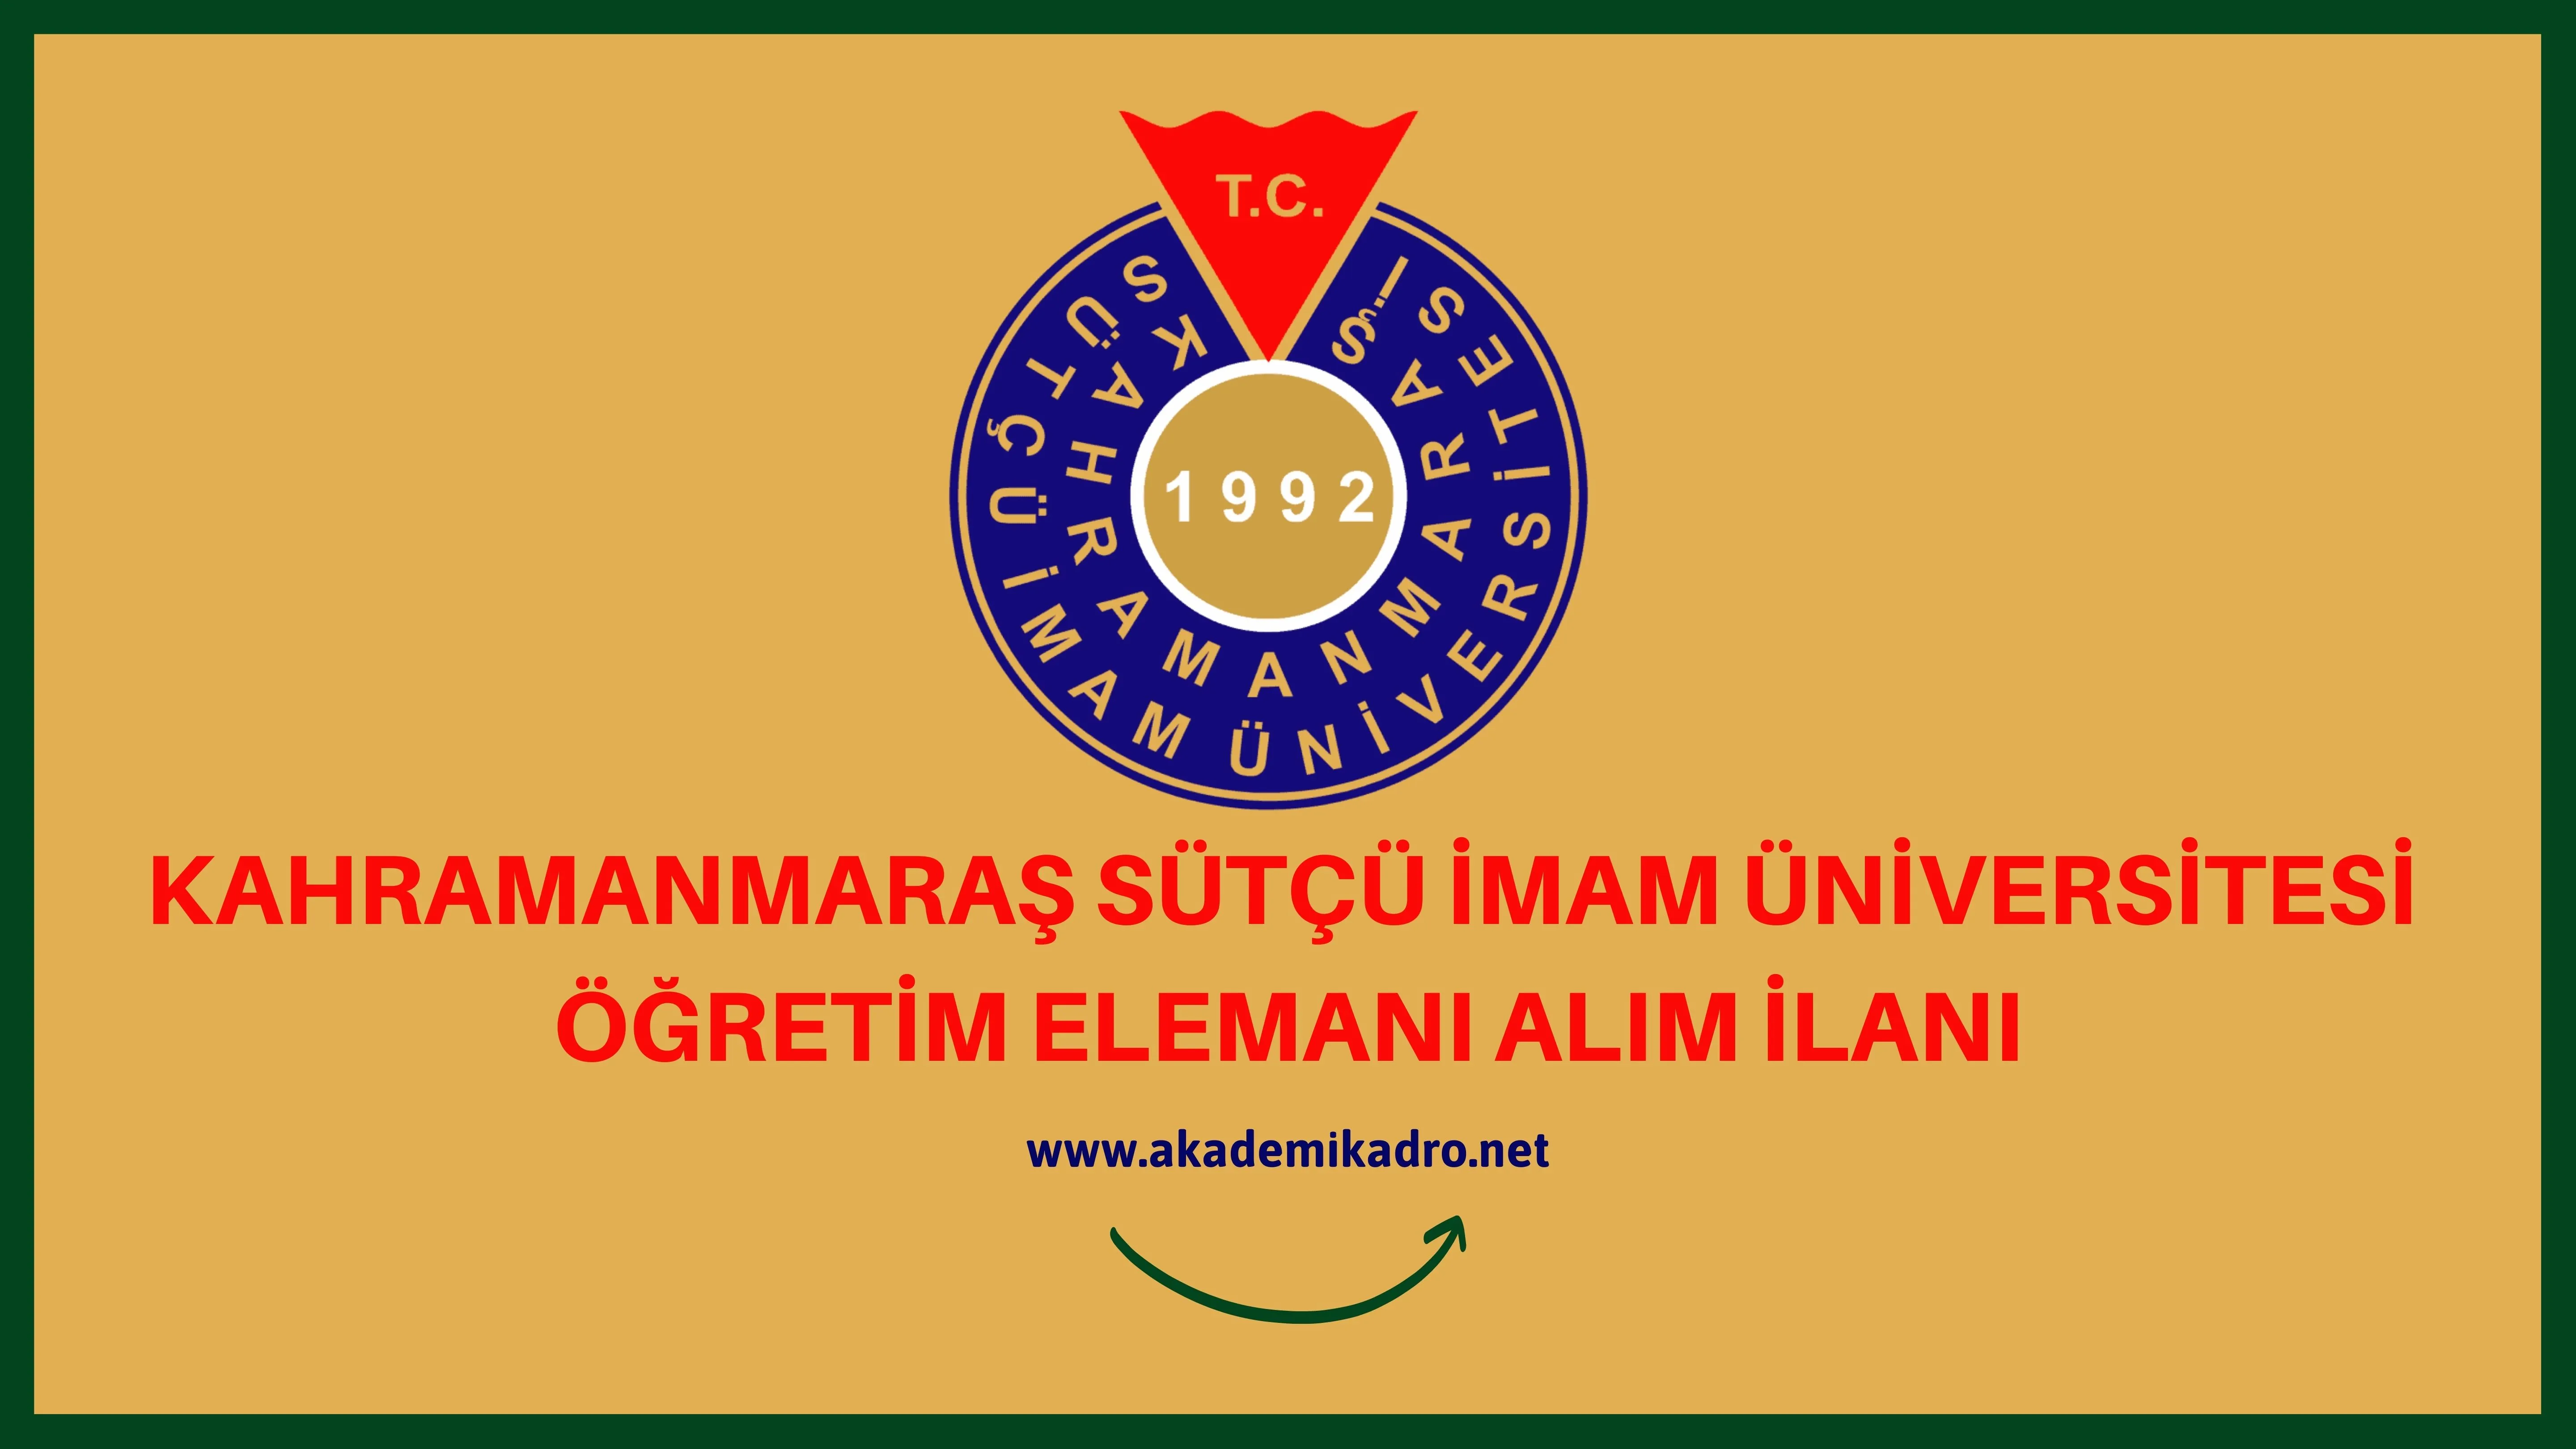 Kahramanmaraş Sütçü İmam Üniversitesi 2 Öğretim Görevlisi ve 4 Öğretim üyesi alacaktır. Son başvuru tarihi 12 Eylül 2022